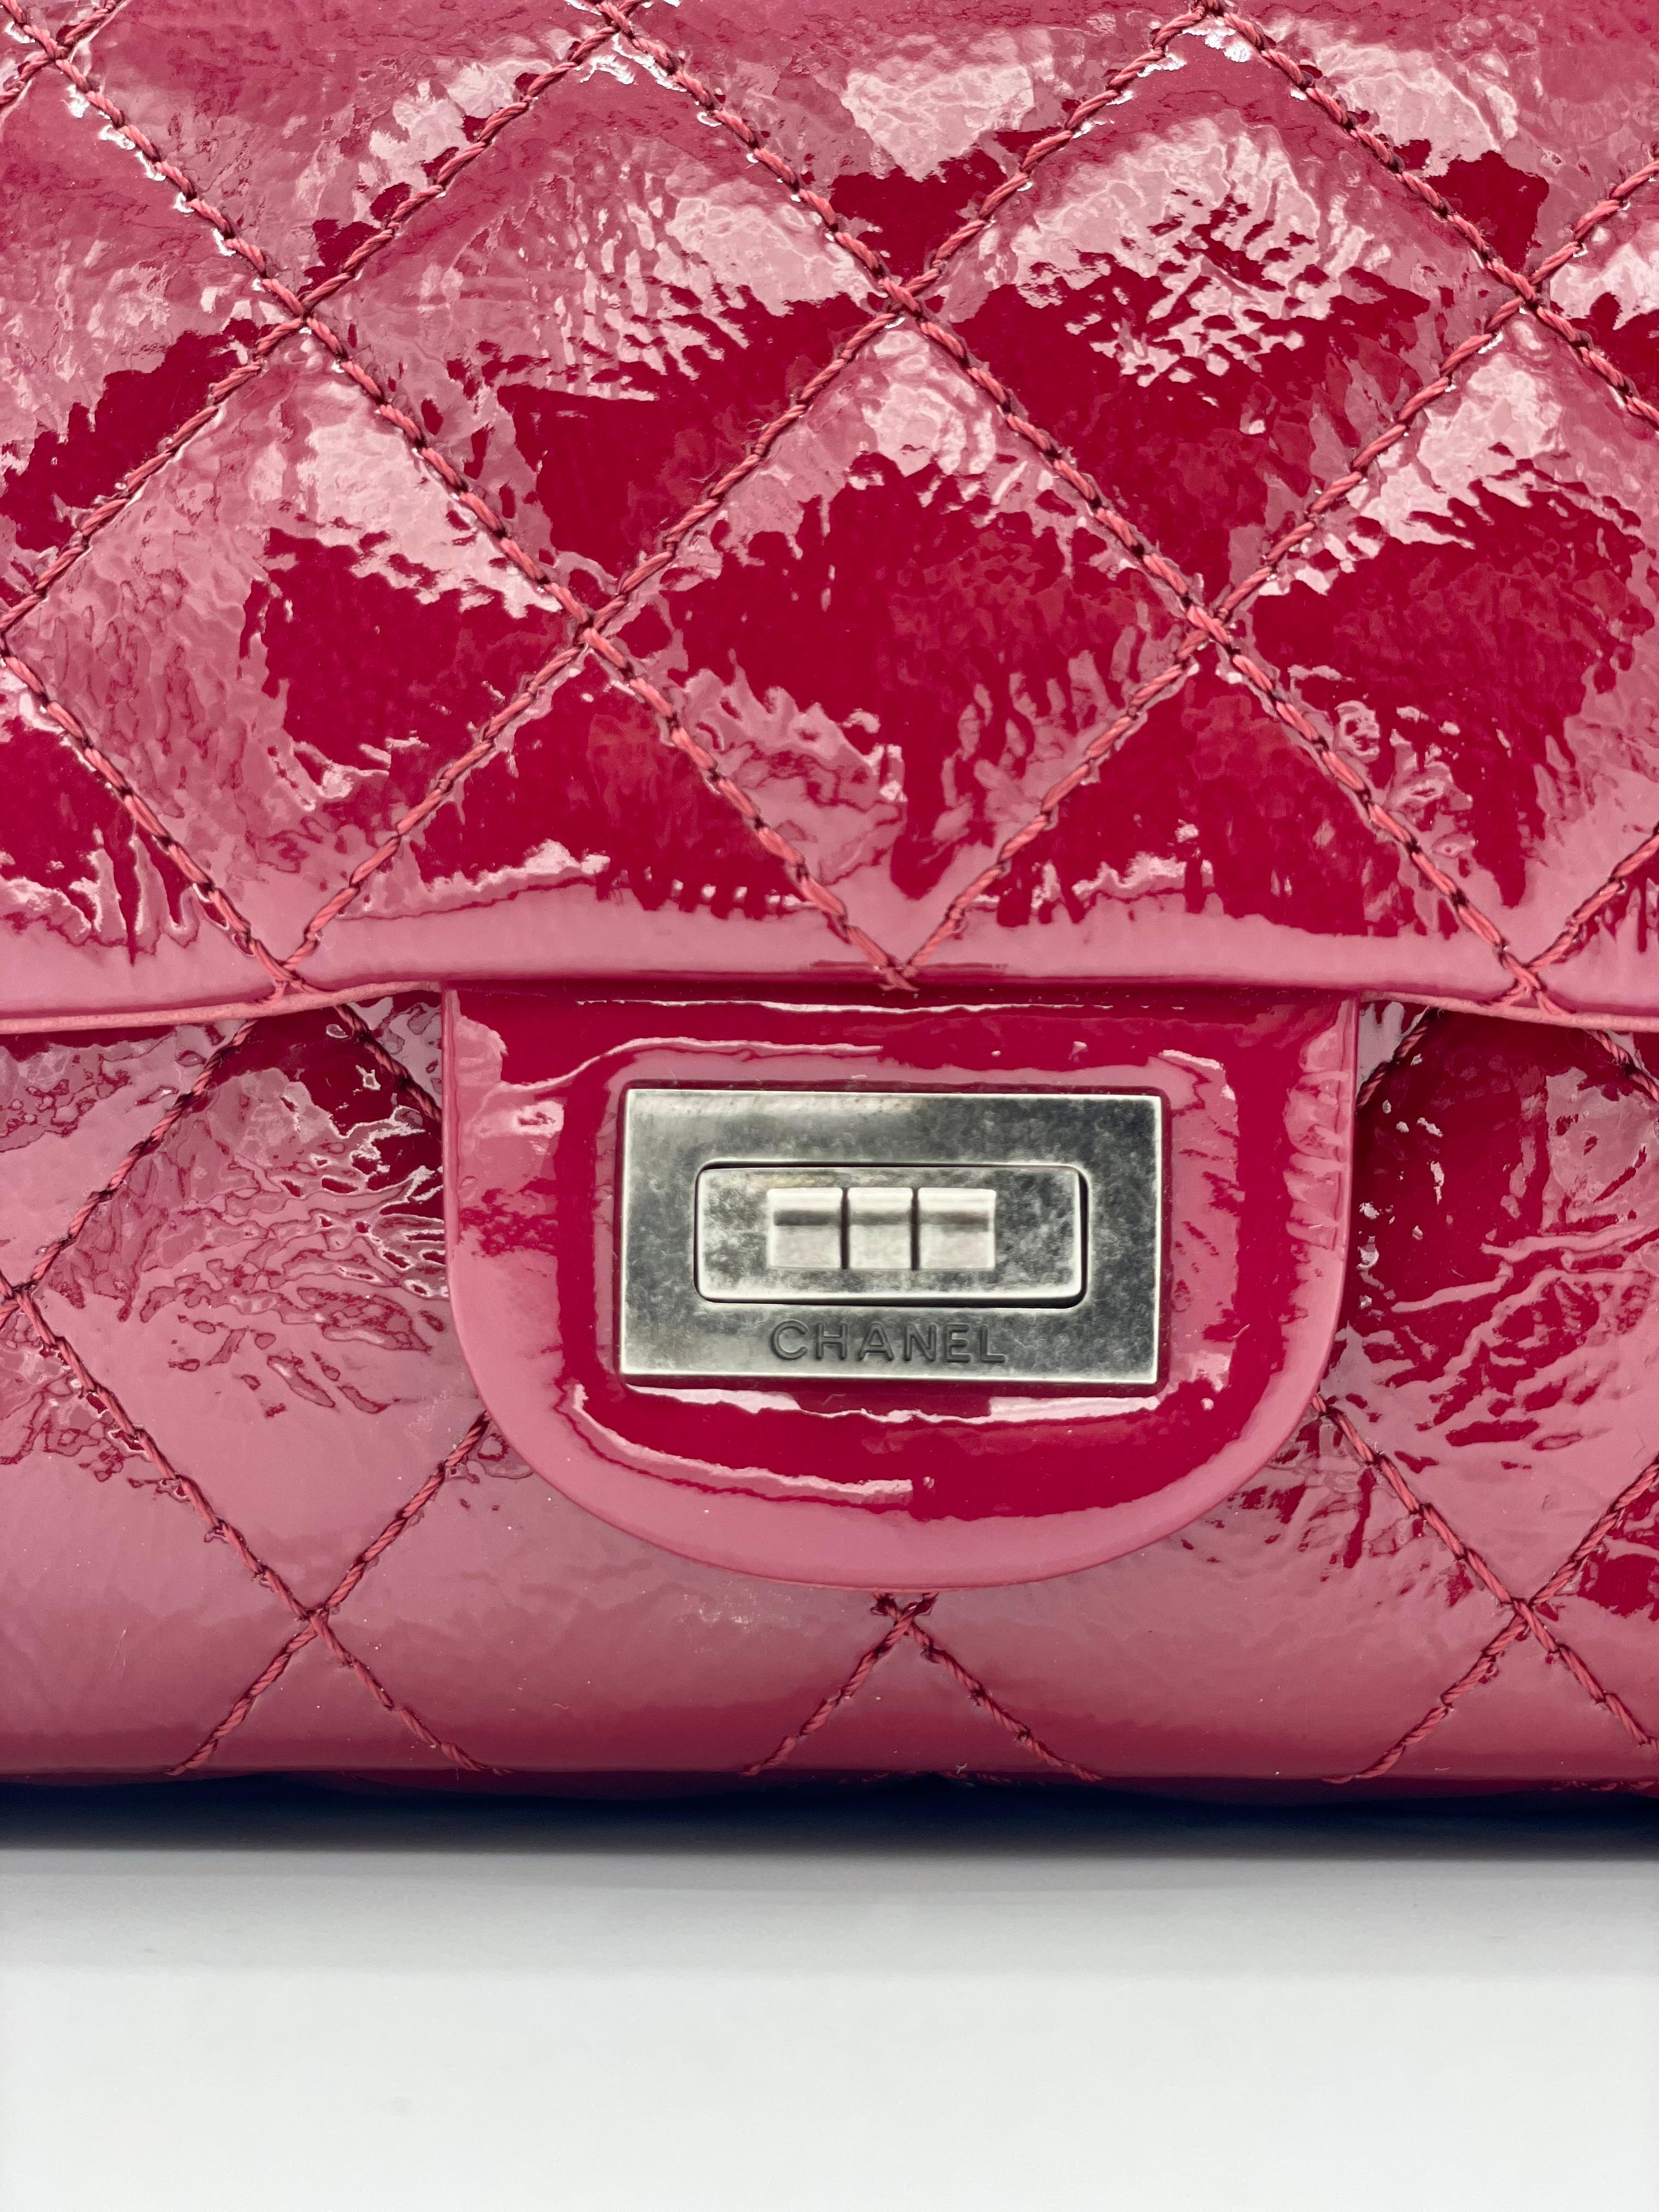 2010-2011 Chanel Lackleder Gesteppt Rot 2.55 Reissue 225. Rotes Lackleder mit Steppung, umgeben von silberner Hardware. 
Dazu gehört auch das Mademoiselle-Schloss von Coco Chanel. Die beiden Klappen lassen sich öffnen und geben den Blick auf ein mit